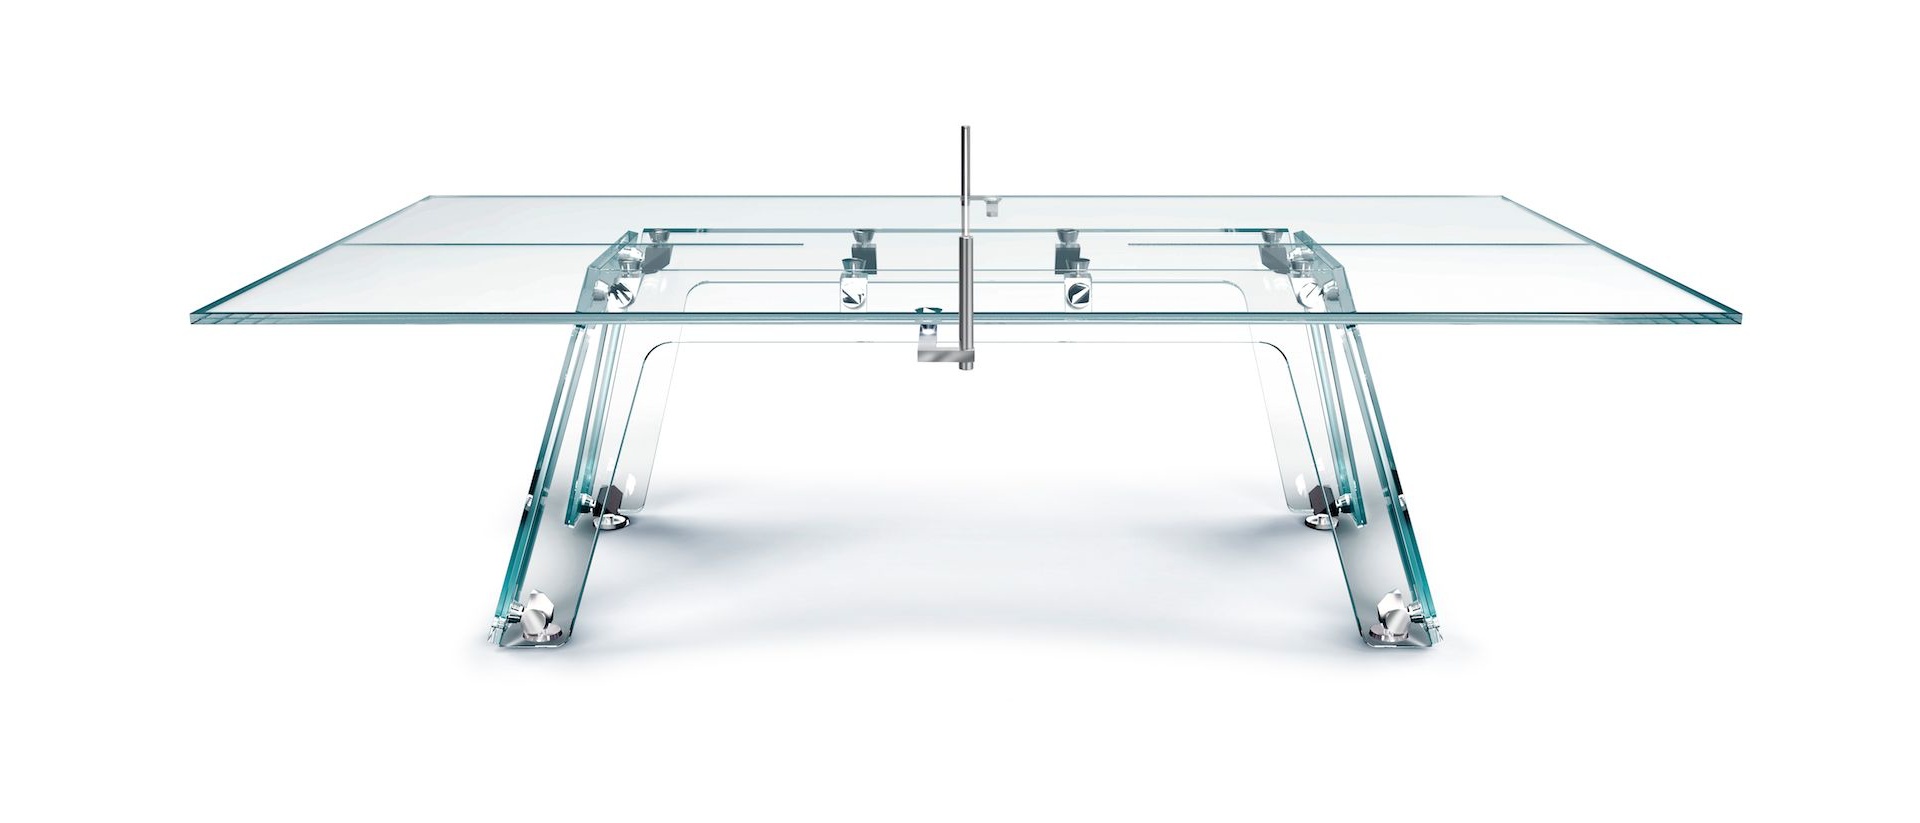 Glasklar: Diesen Ping-Pong-Tisch wirst du lieben 2